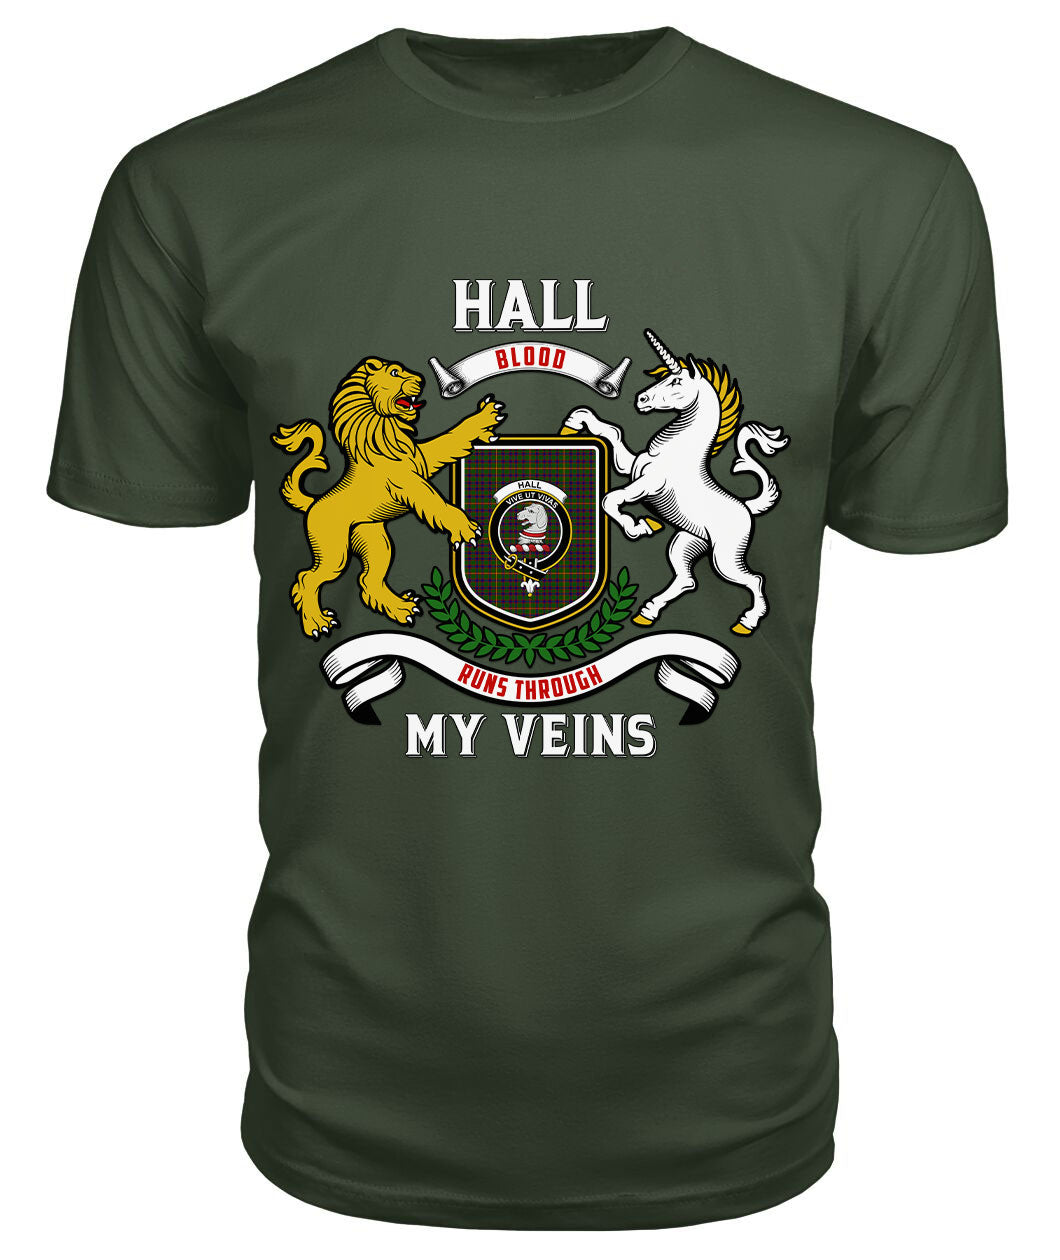 Hall Tartan Crest 2D T-shirt - Blood Runs Through My Veins Style